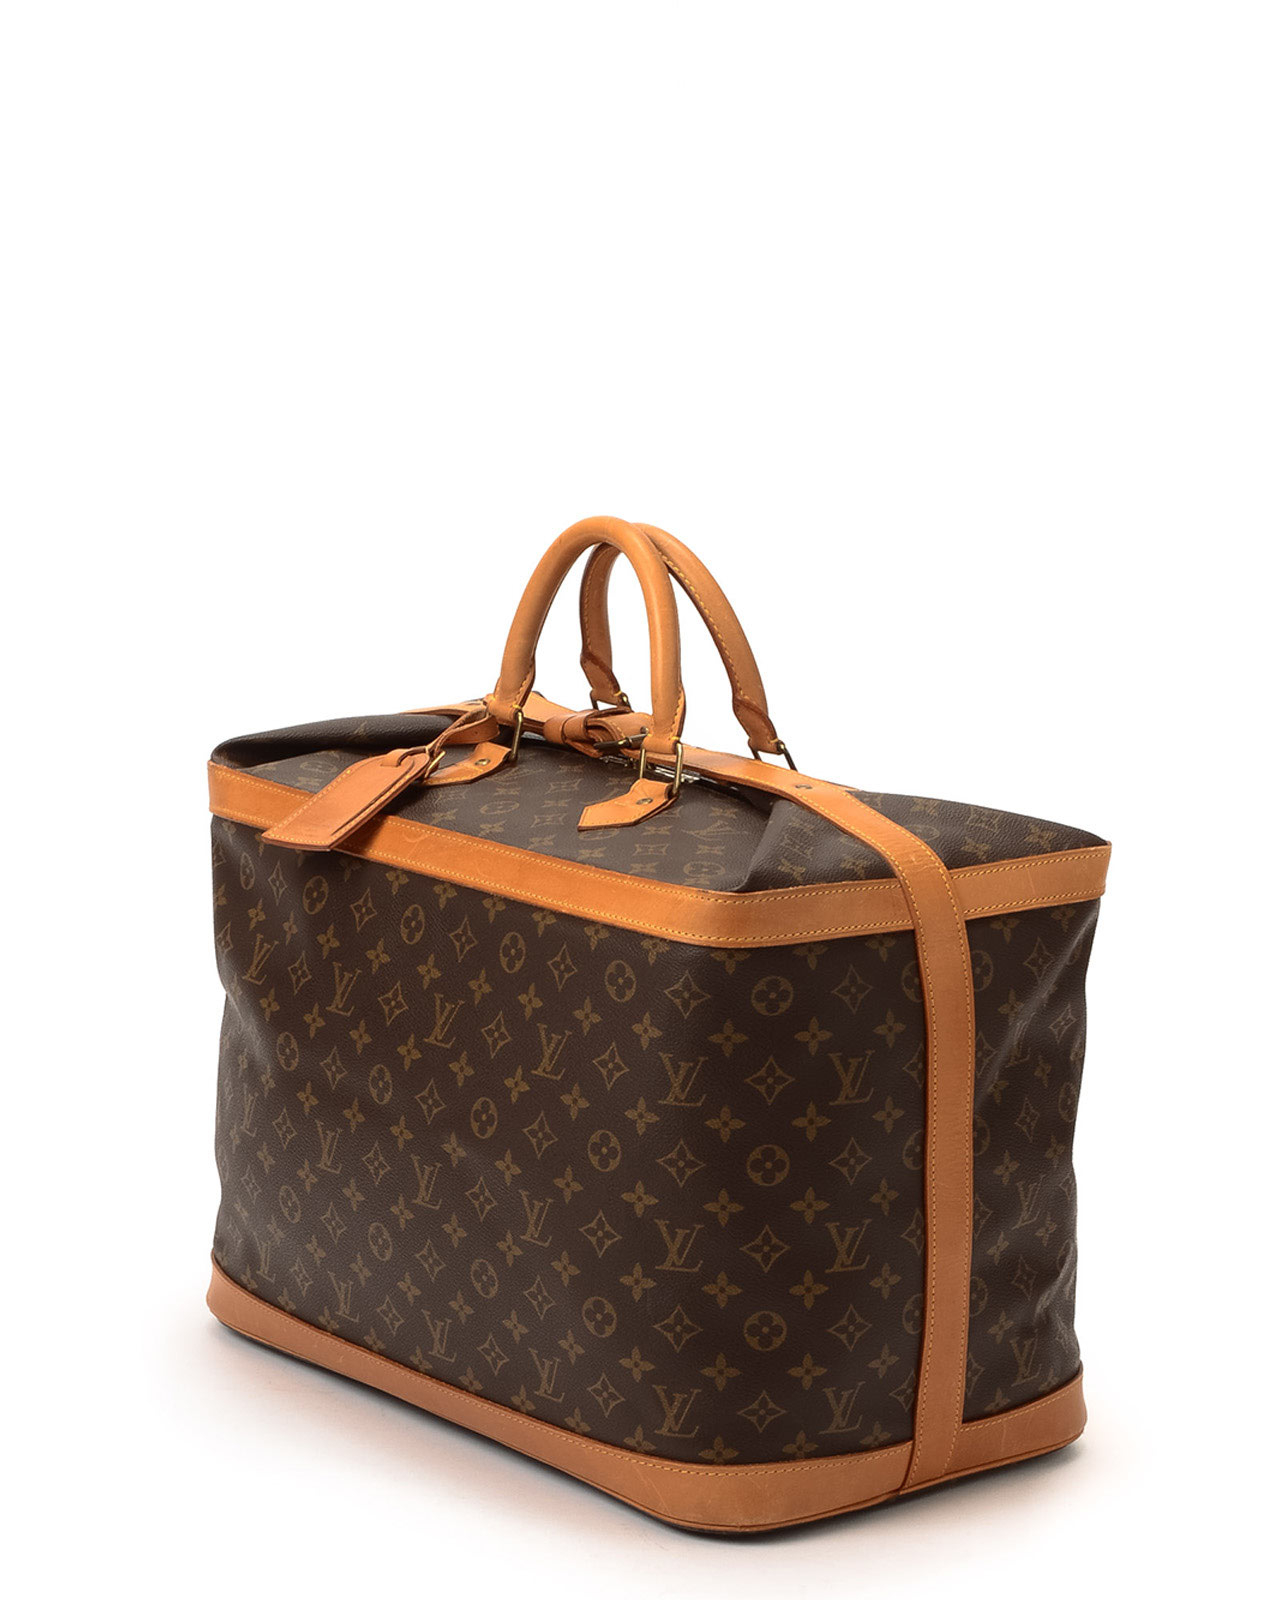 Louis Vuitton Large Monogram Cruiser Travel Bag 55